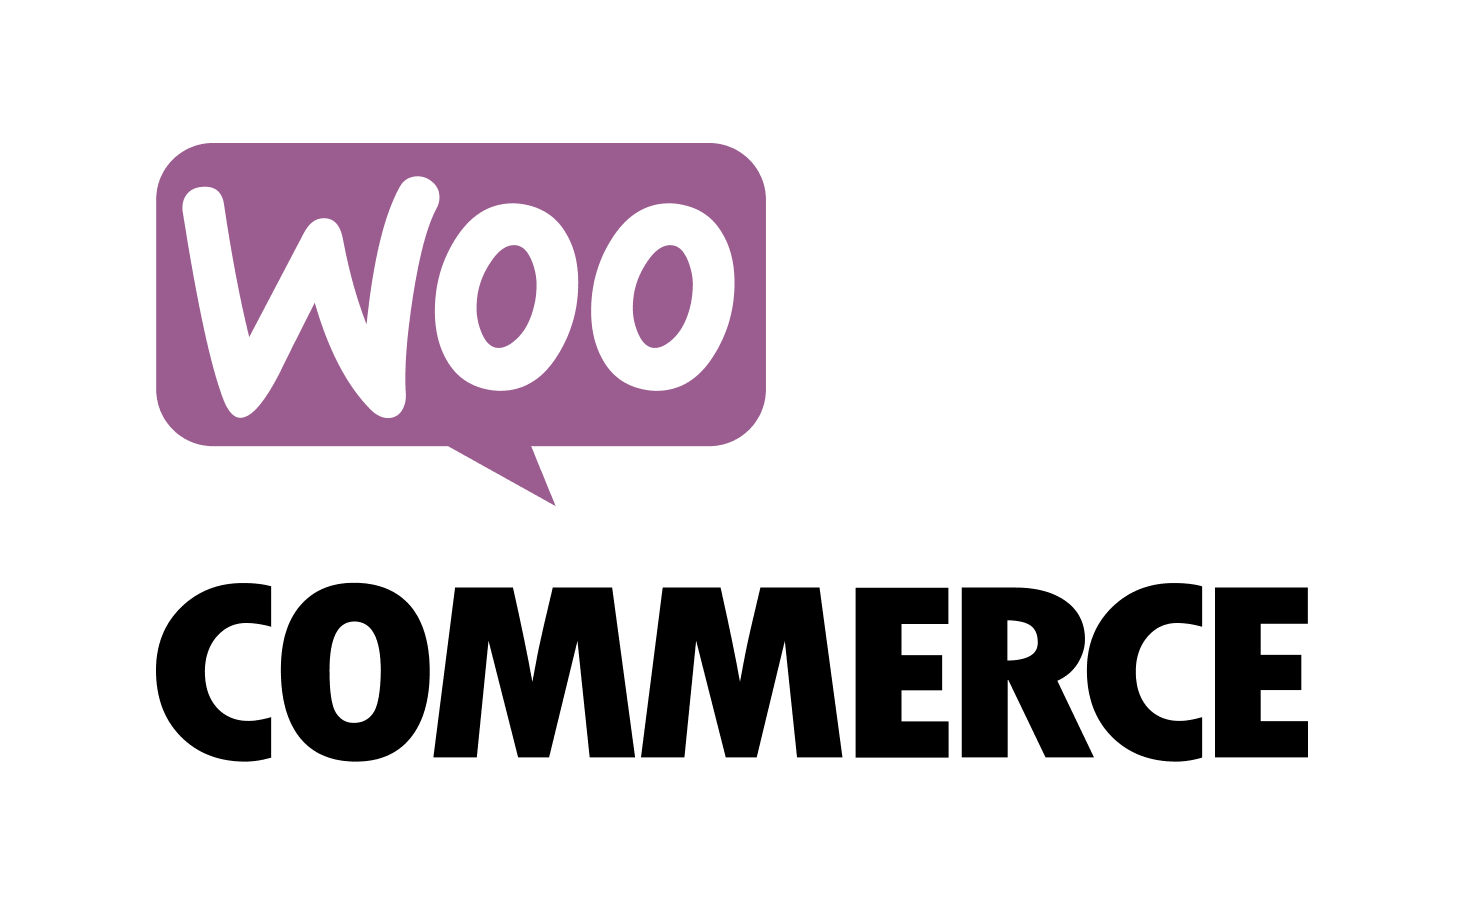 Woo Commerce Logo